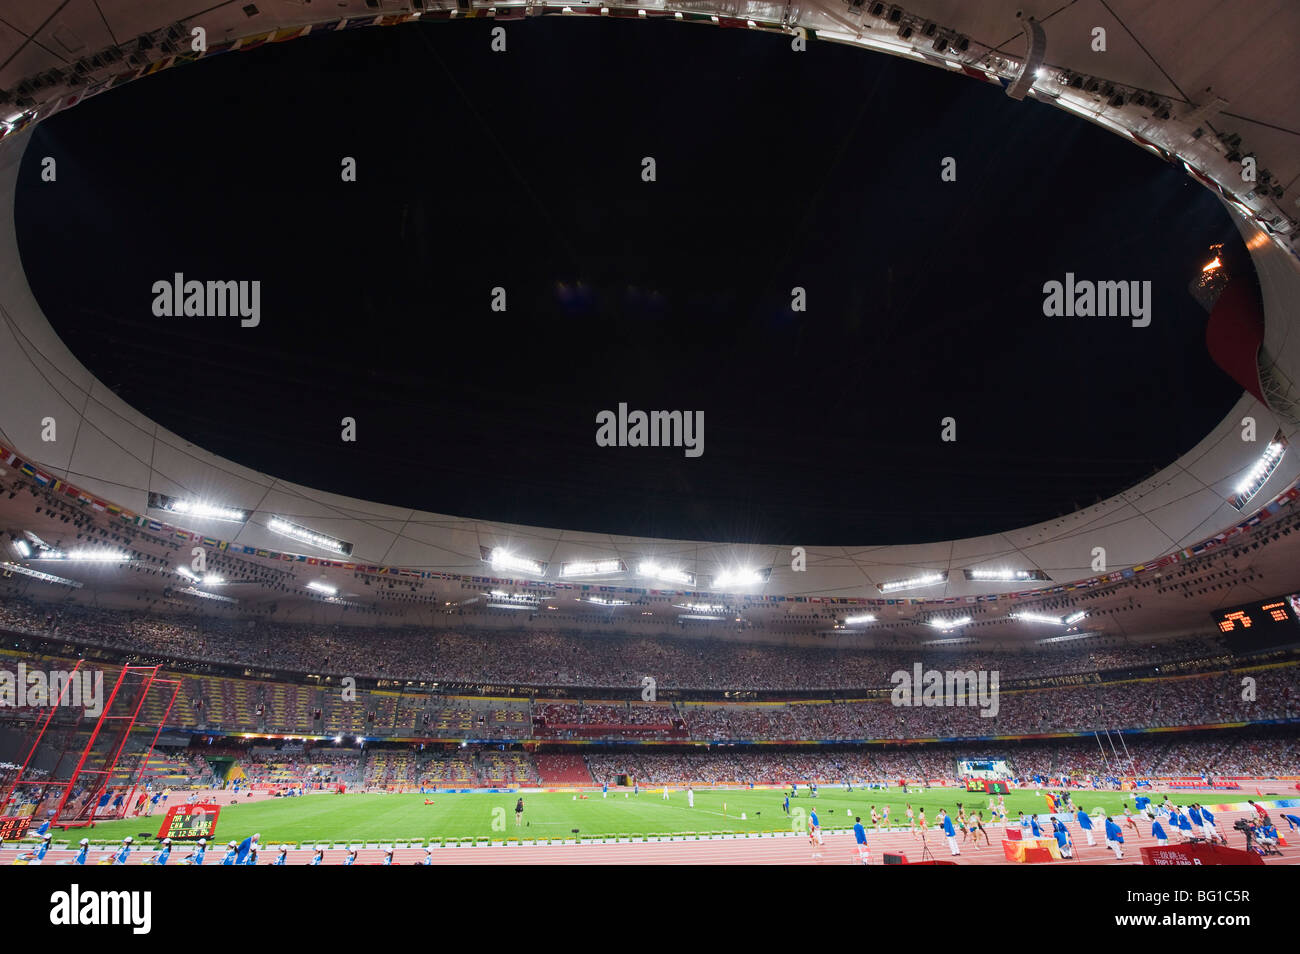 Im Inneren der Birds Nest Nationalstadion während der Olympischen Spiele 2008, Leichtathletik-Wettbewerb, Peking, China, Asien Stockfoto